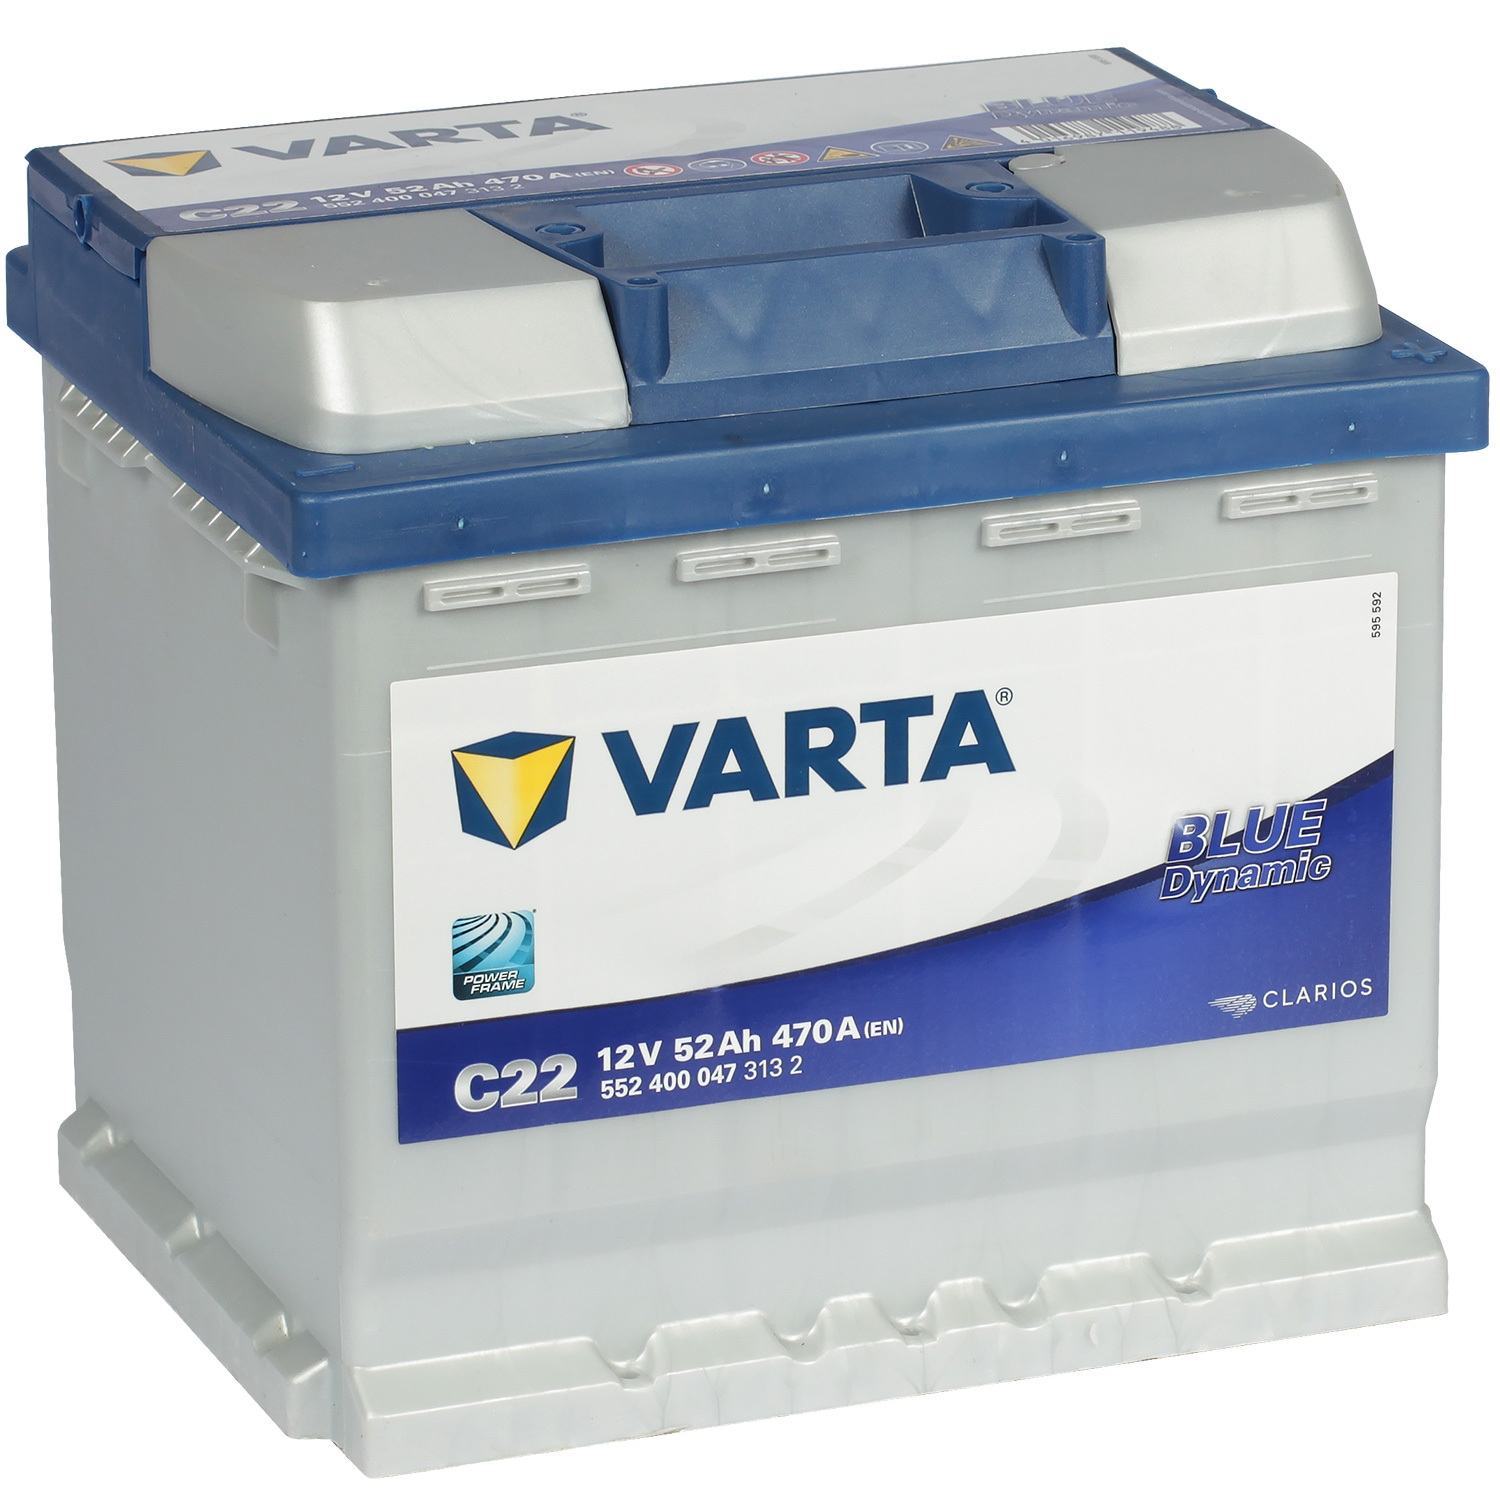 Varta Автомобильный аккумулятор Varta Blue Dynamic C22 52 Ач обратная полярность L1 varta автомобильный аккумулятор varta blue dynamic d59 60 ач обратная полярность lb2